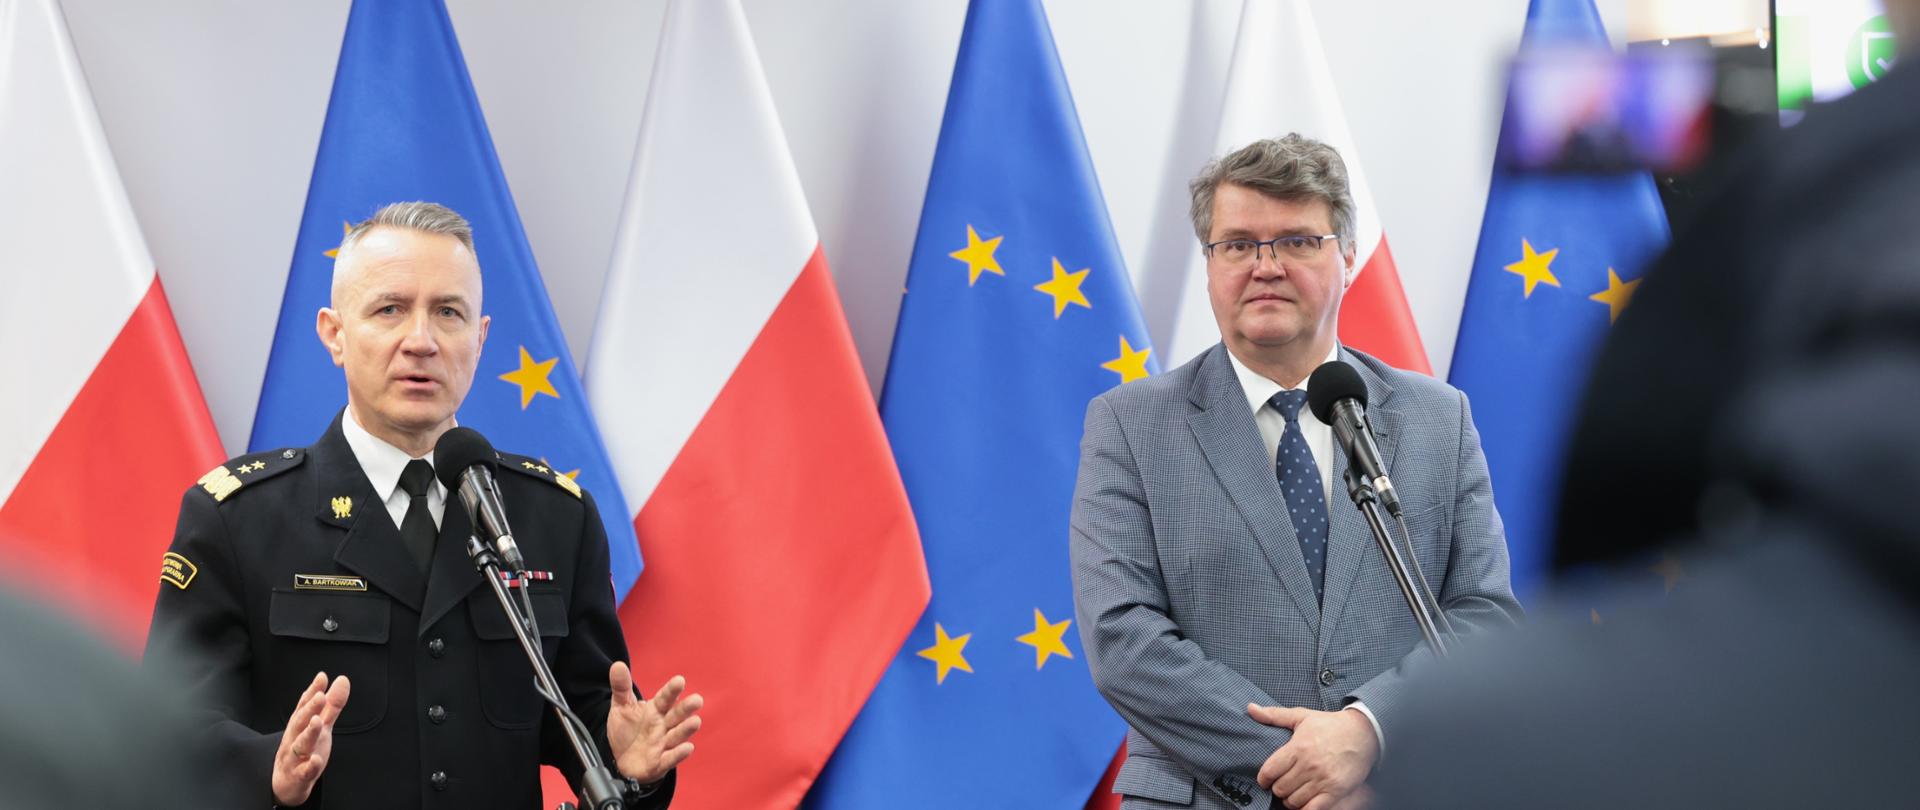 Dwóch mężczyzn stojących przed mikrofonami. Jeden z nich trzyma w dłoniach teczkę. Drugi w mundurze przemawia gestykulując. W tle widoczne są flagi Unii Europejskiej oraz Polski. 